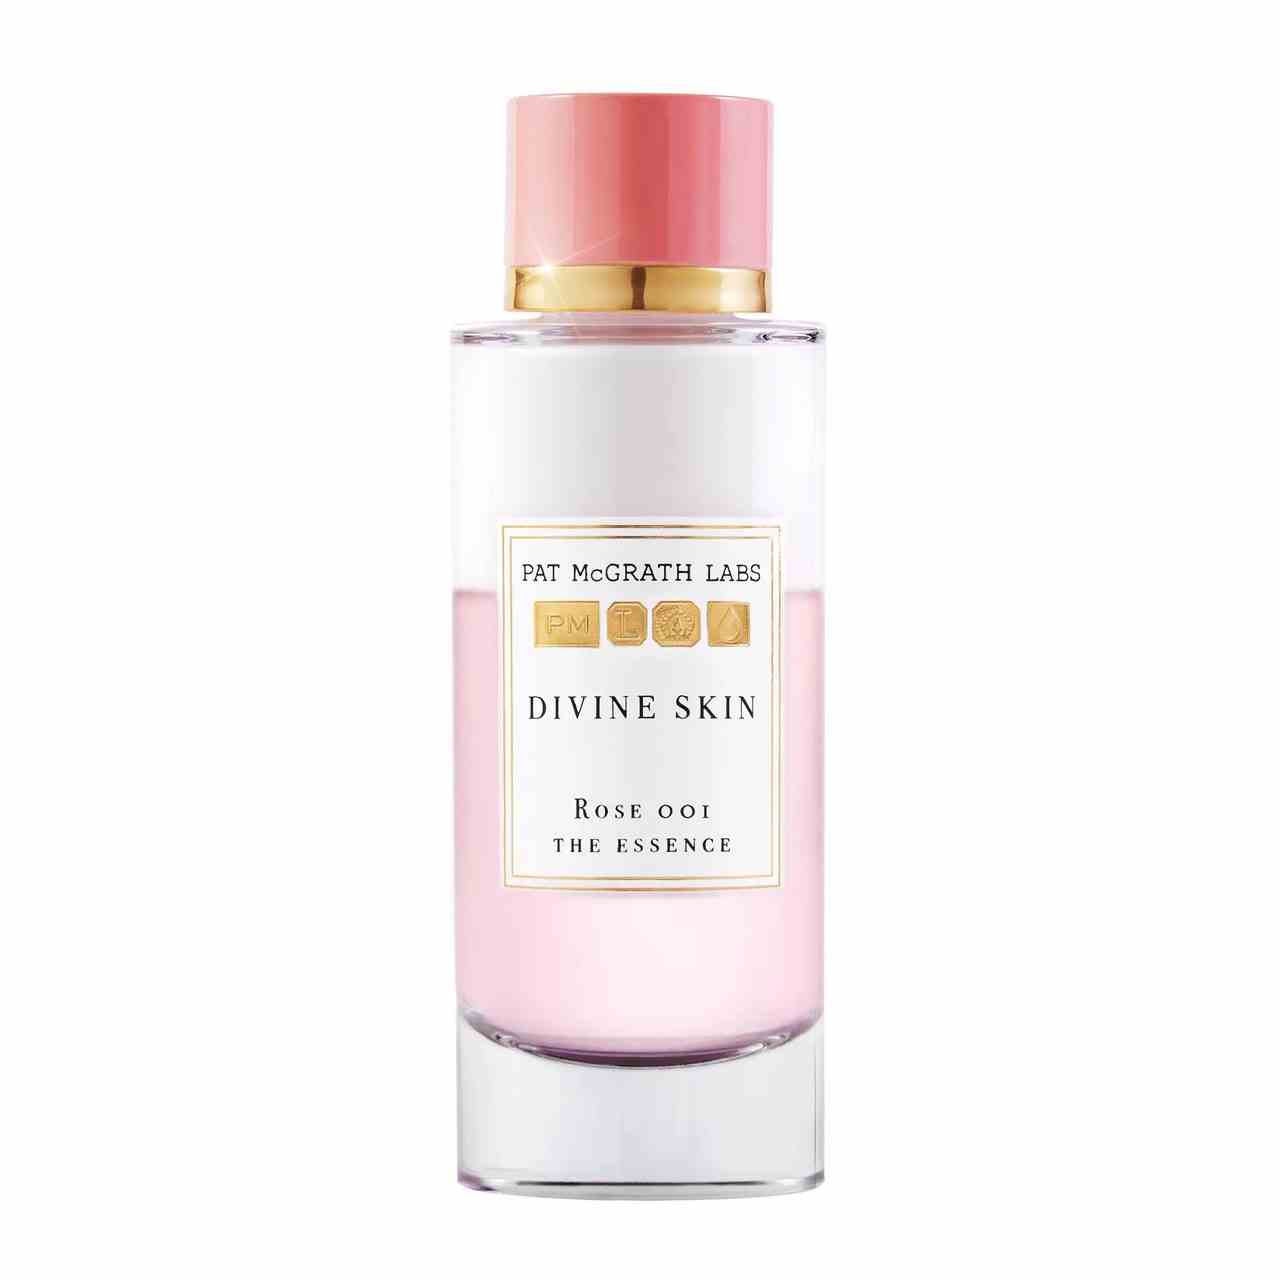 Pat McGrath Labs Divine Skin Rose 001 Essenzflasche mit rosa und weiß getrennter Essenz mit rosa und goldener Kappe auf weißem Hintergrund